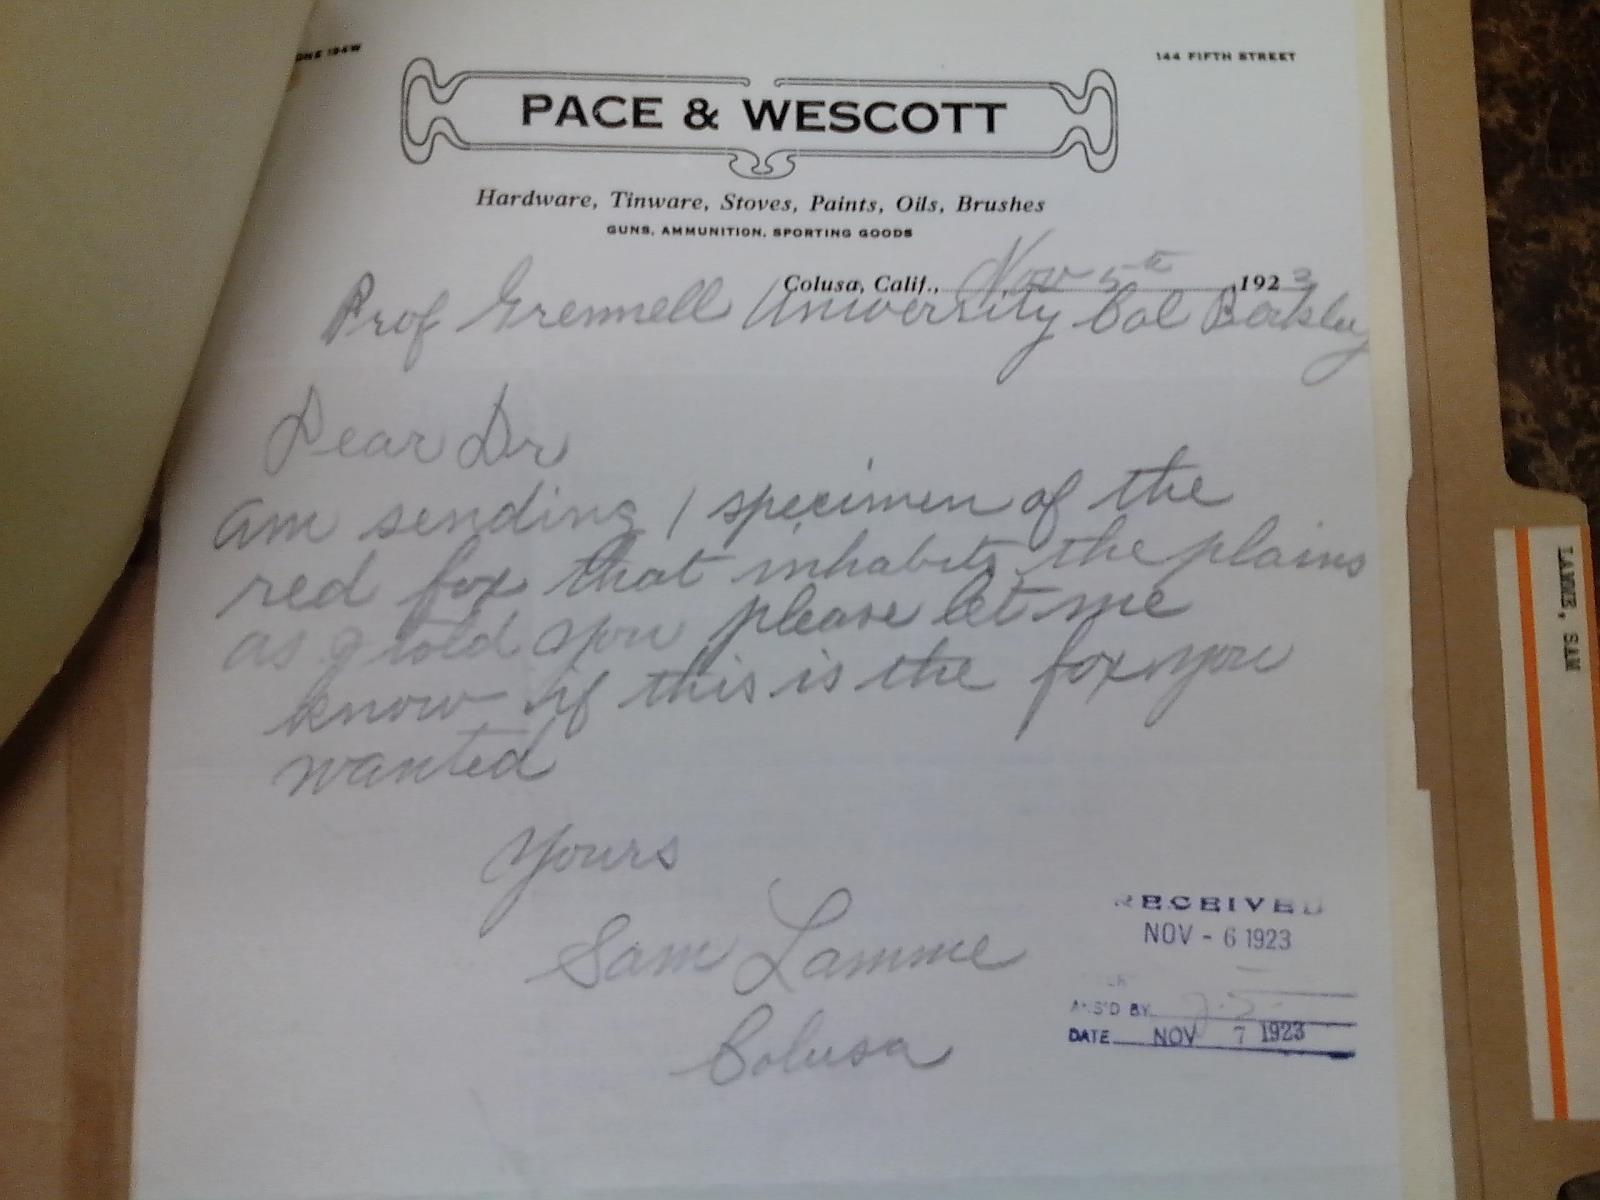 Sam Lamme’s first letter to Joseph Grinnell regarding the fox specimen, dated 5 November, 1923.